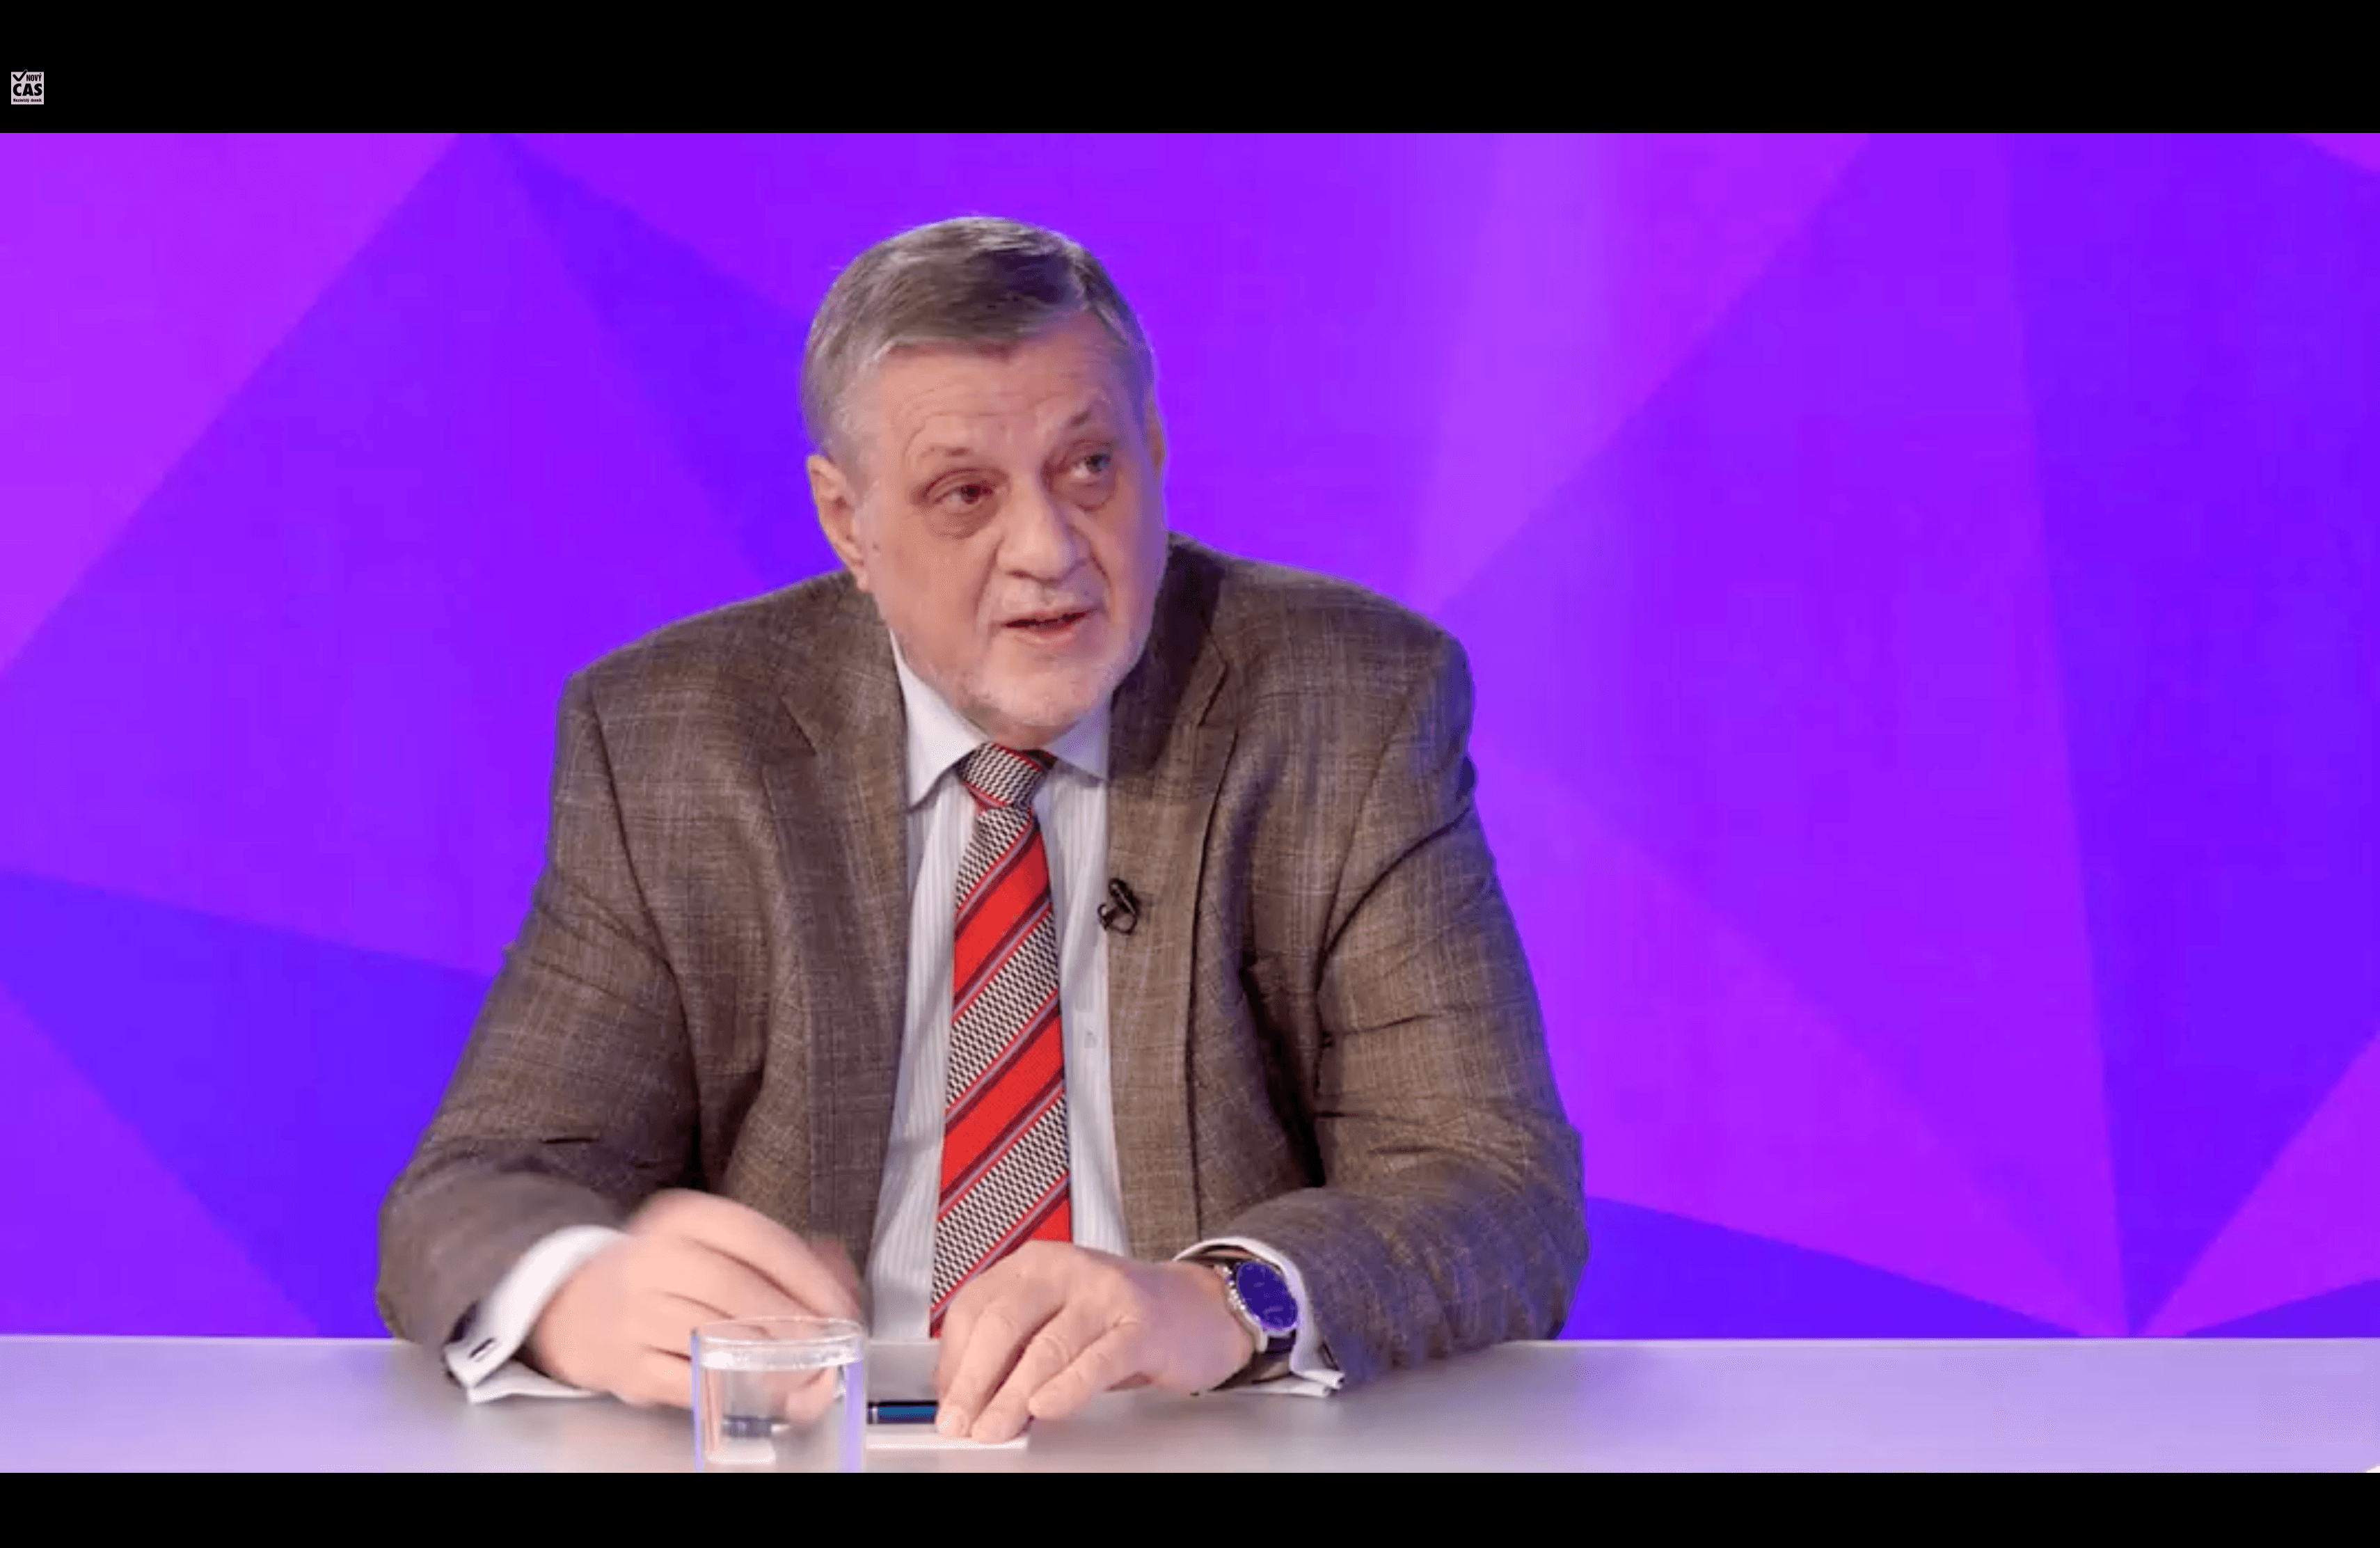 Nový Čas: Video diskusia s kandidátom Jánom Kubišom